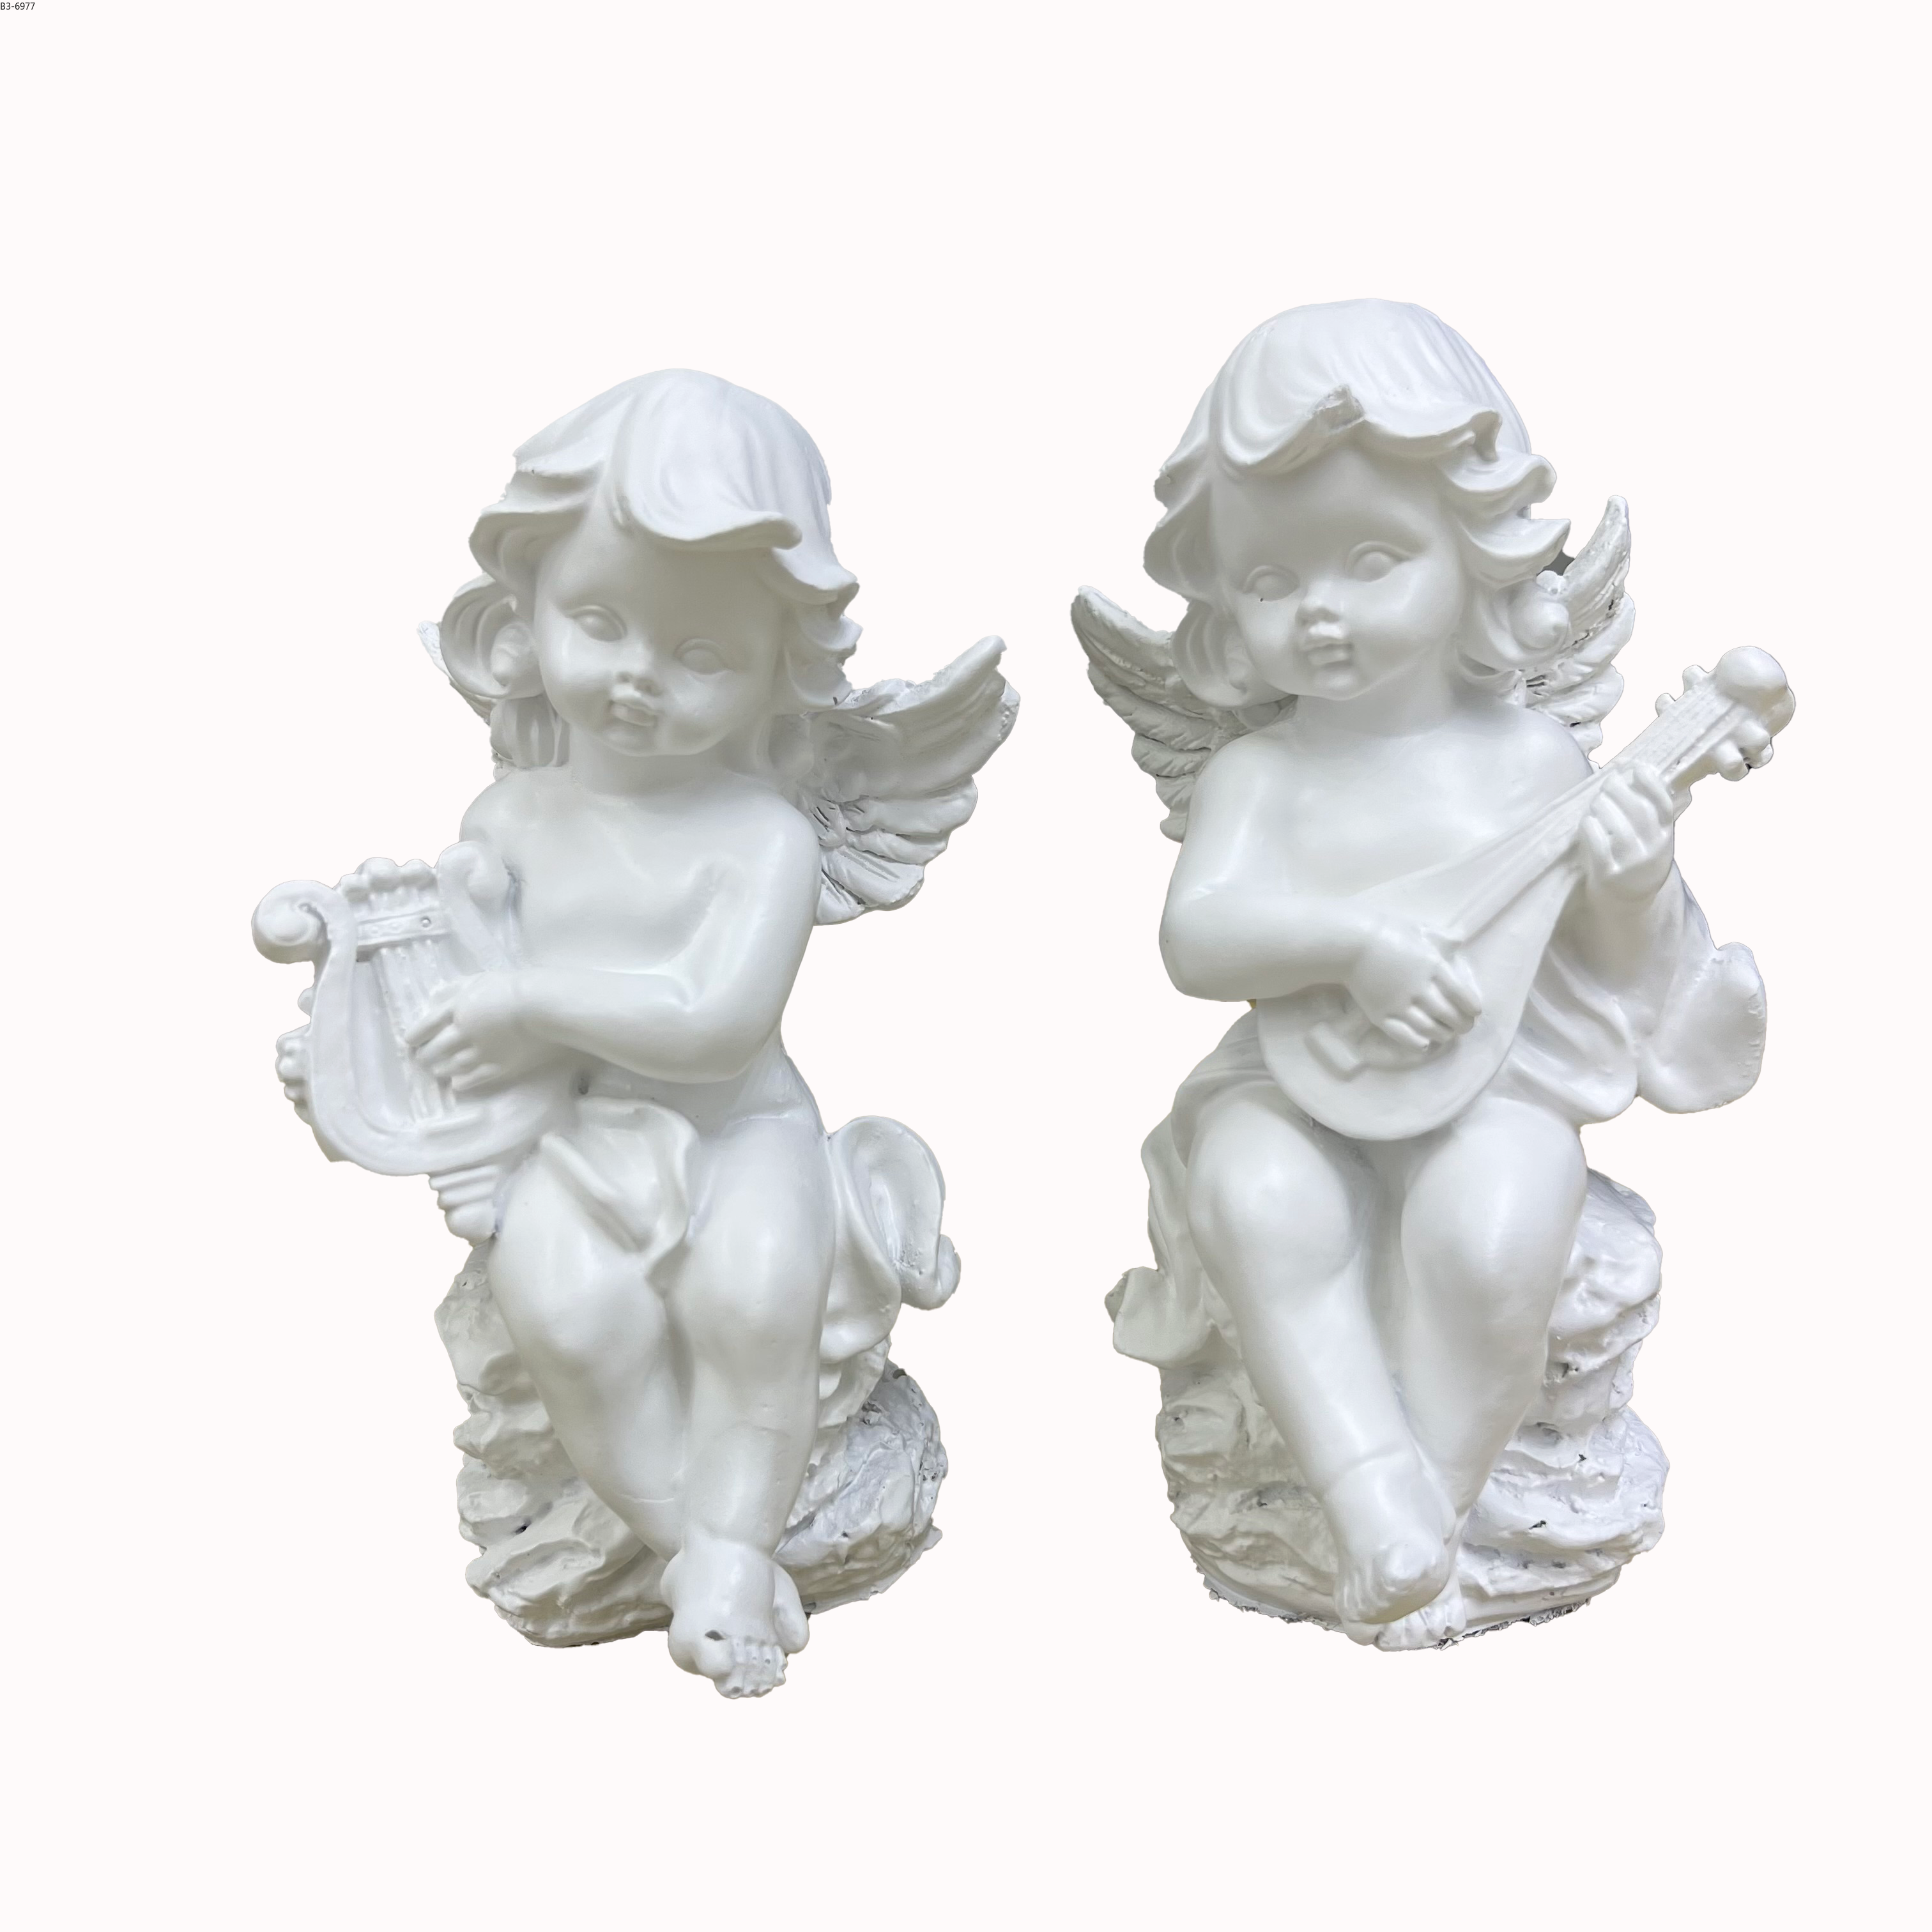 白色天使雕像带翅膀天使摆件花园装饰品树脂工艺品婴儿房家居摆件圣诞节礼品图